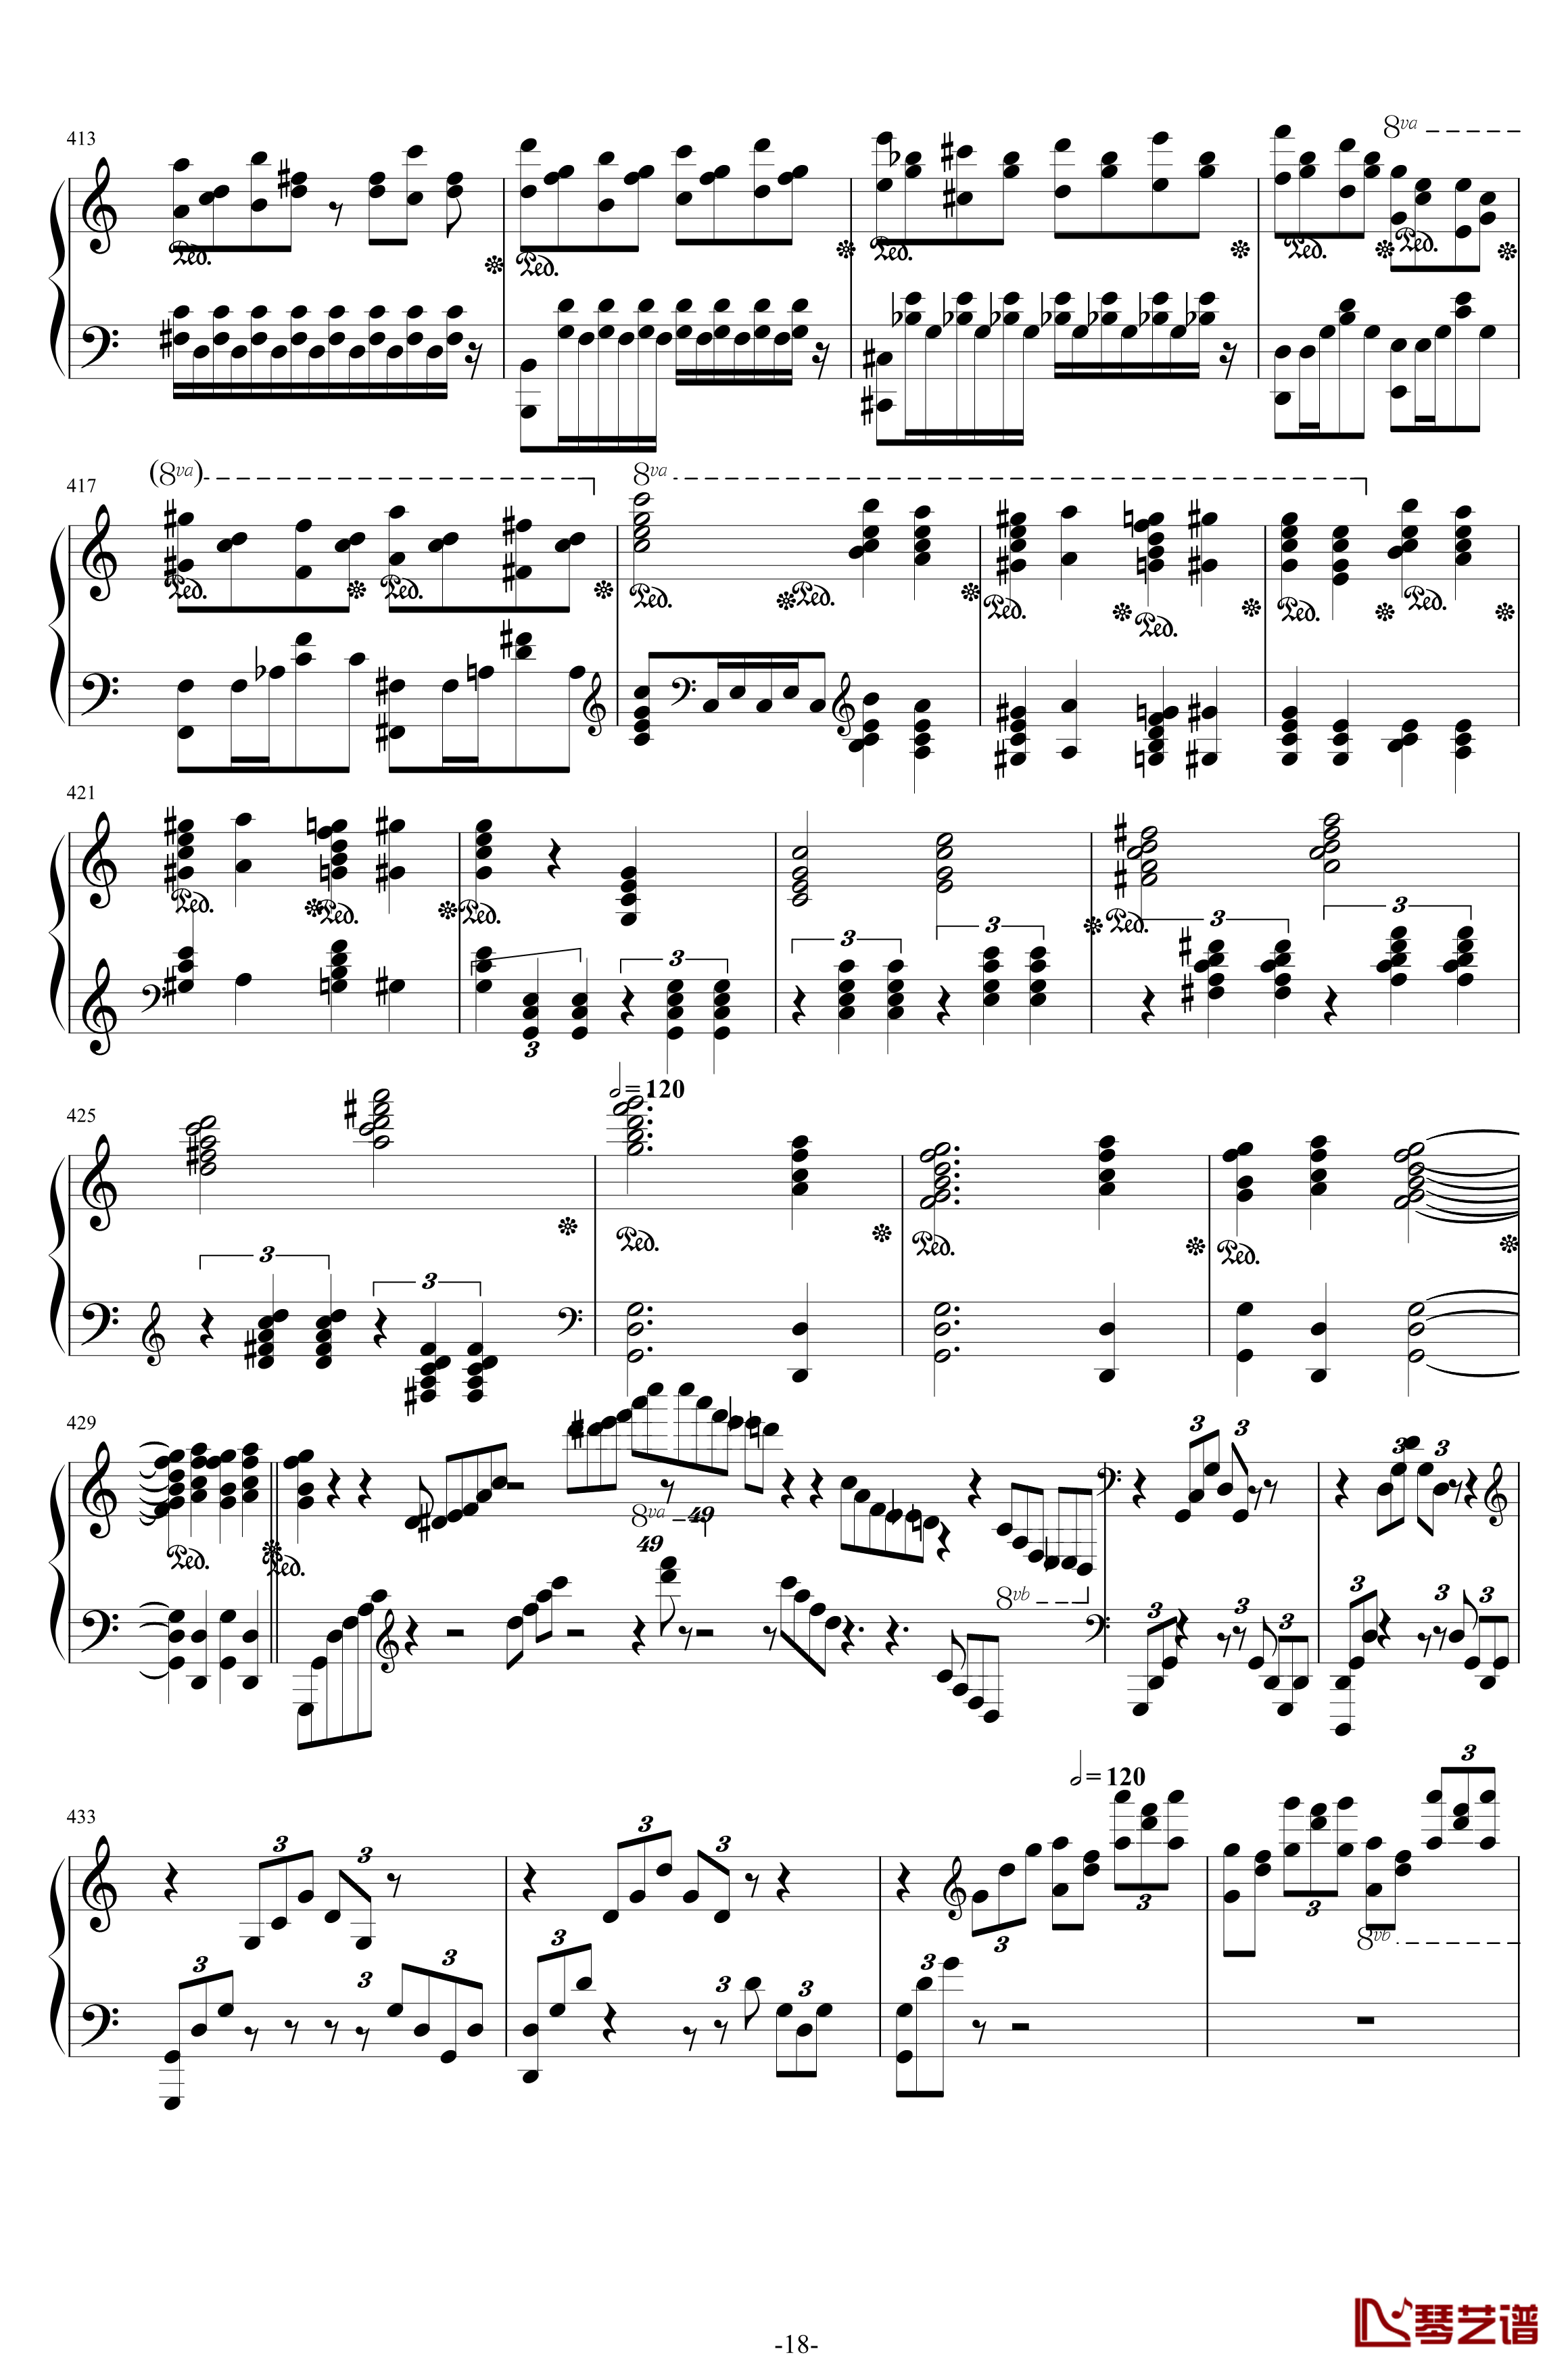 第二钢琴协奏曲钢琴谱-第三乐章独奏版-c小调-拉赫马尼若夫18